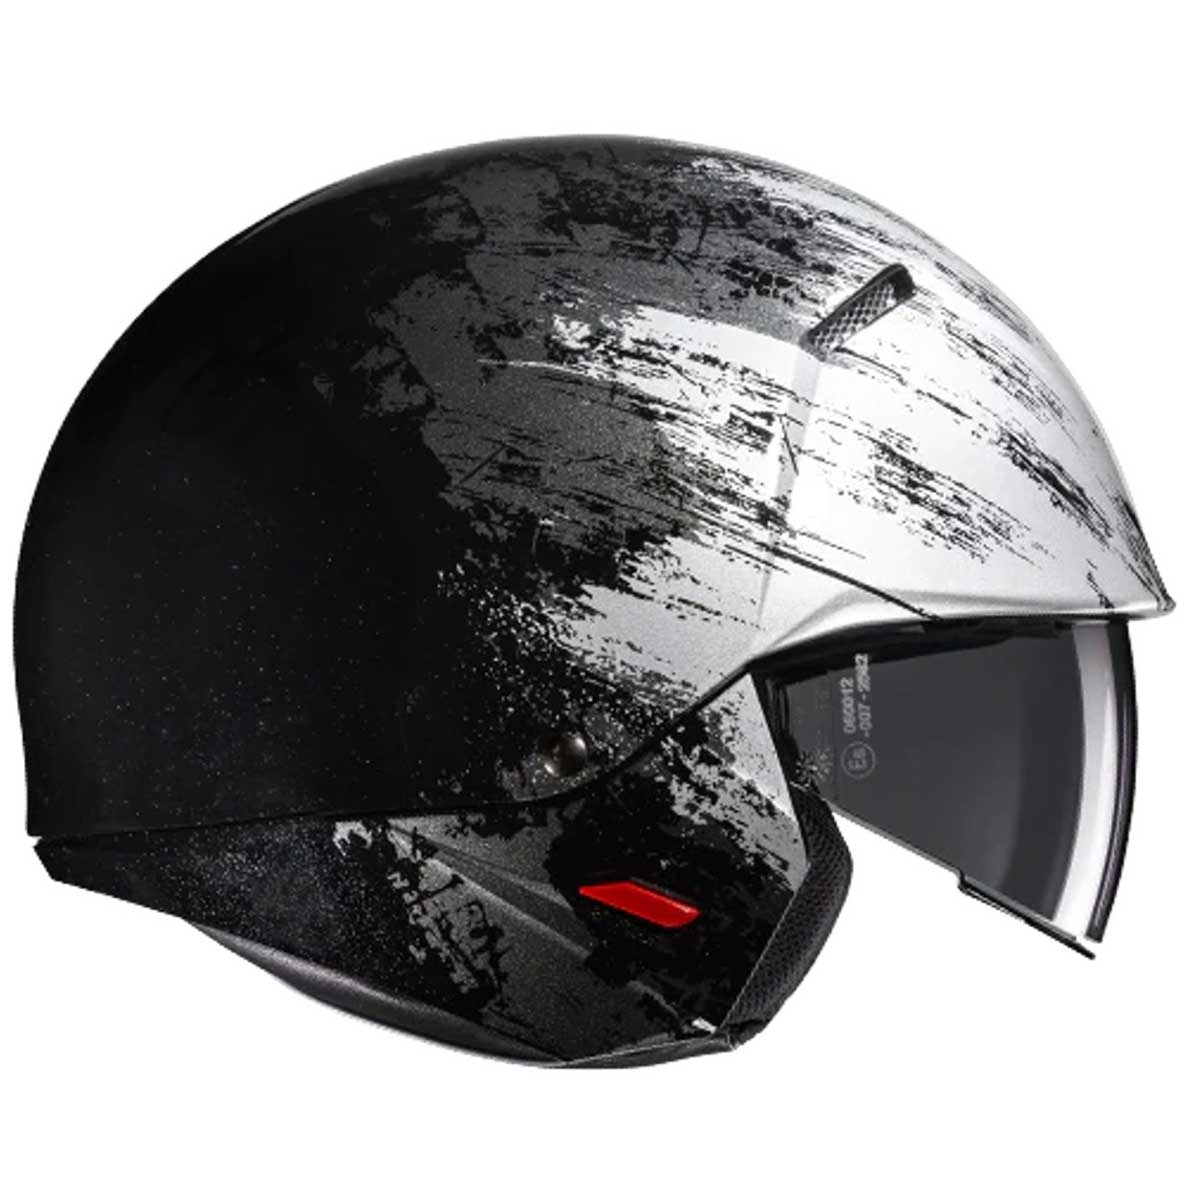 HJC i20 Furia MC5 Helm, schwarz-silber